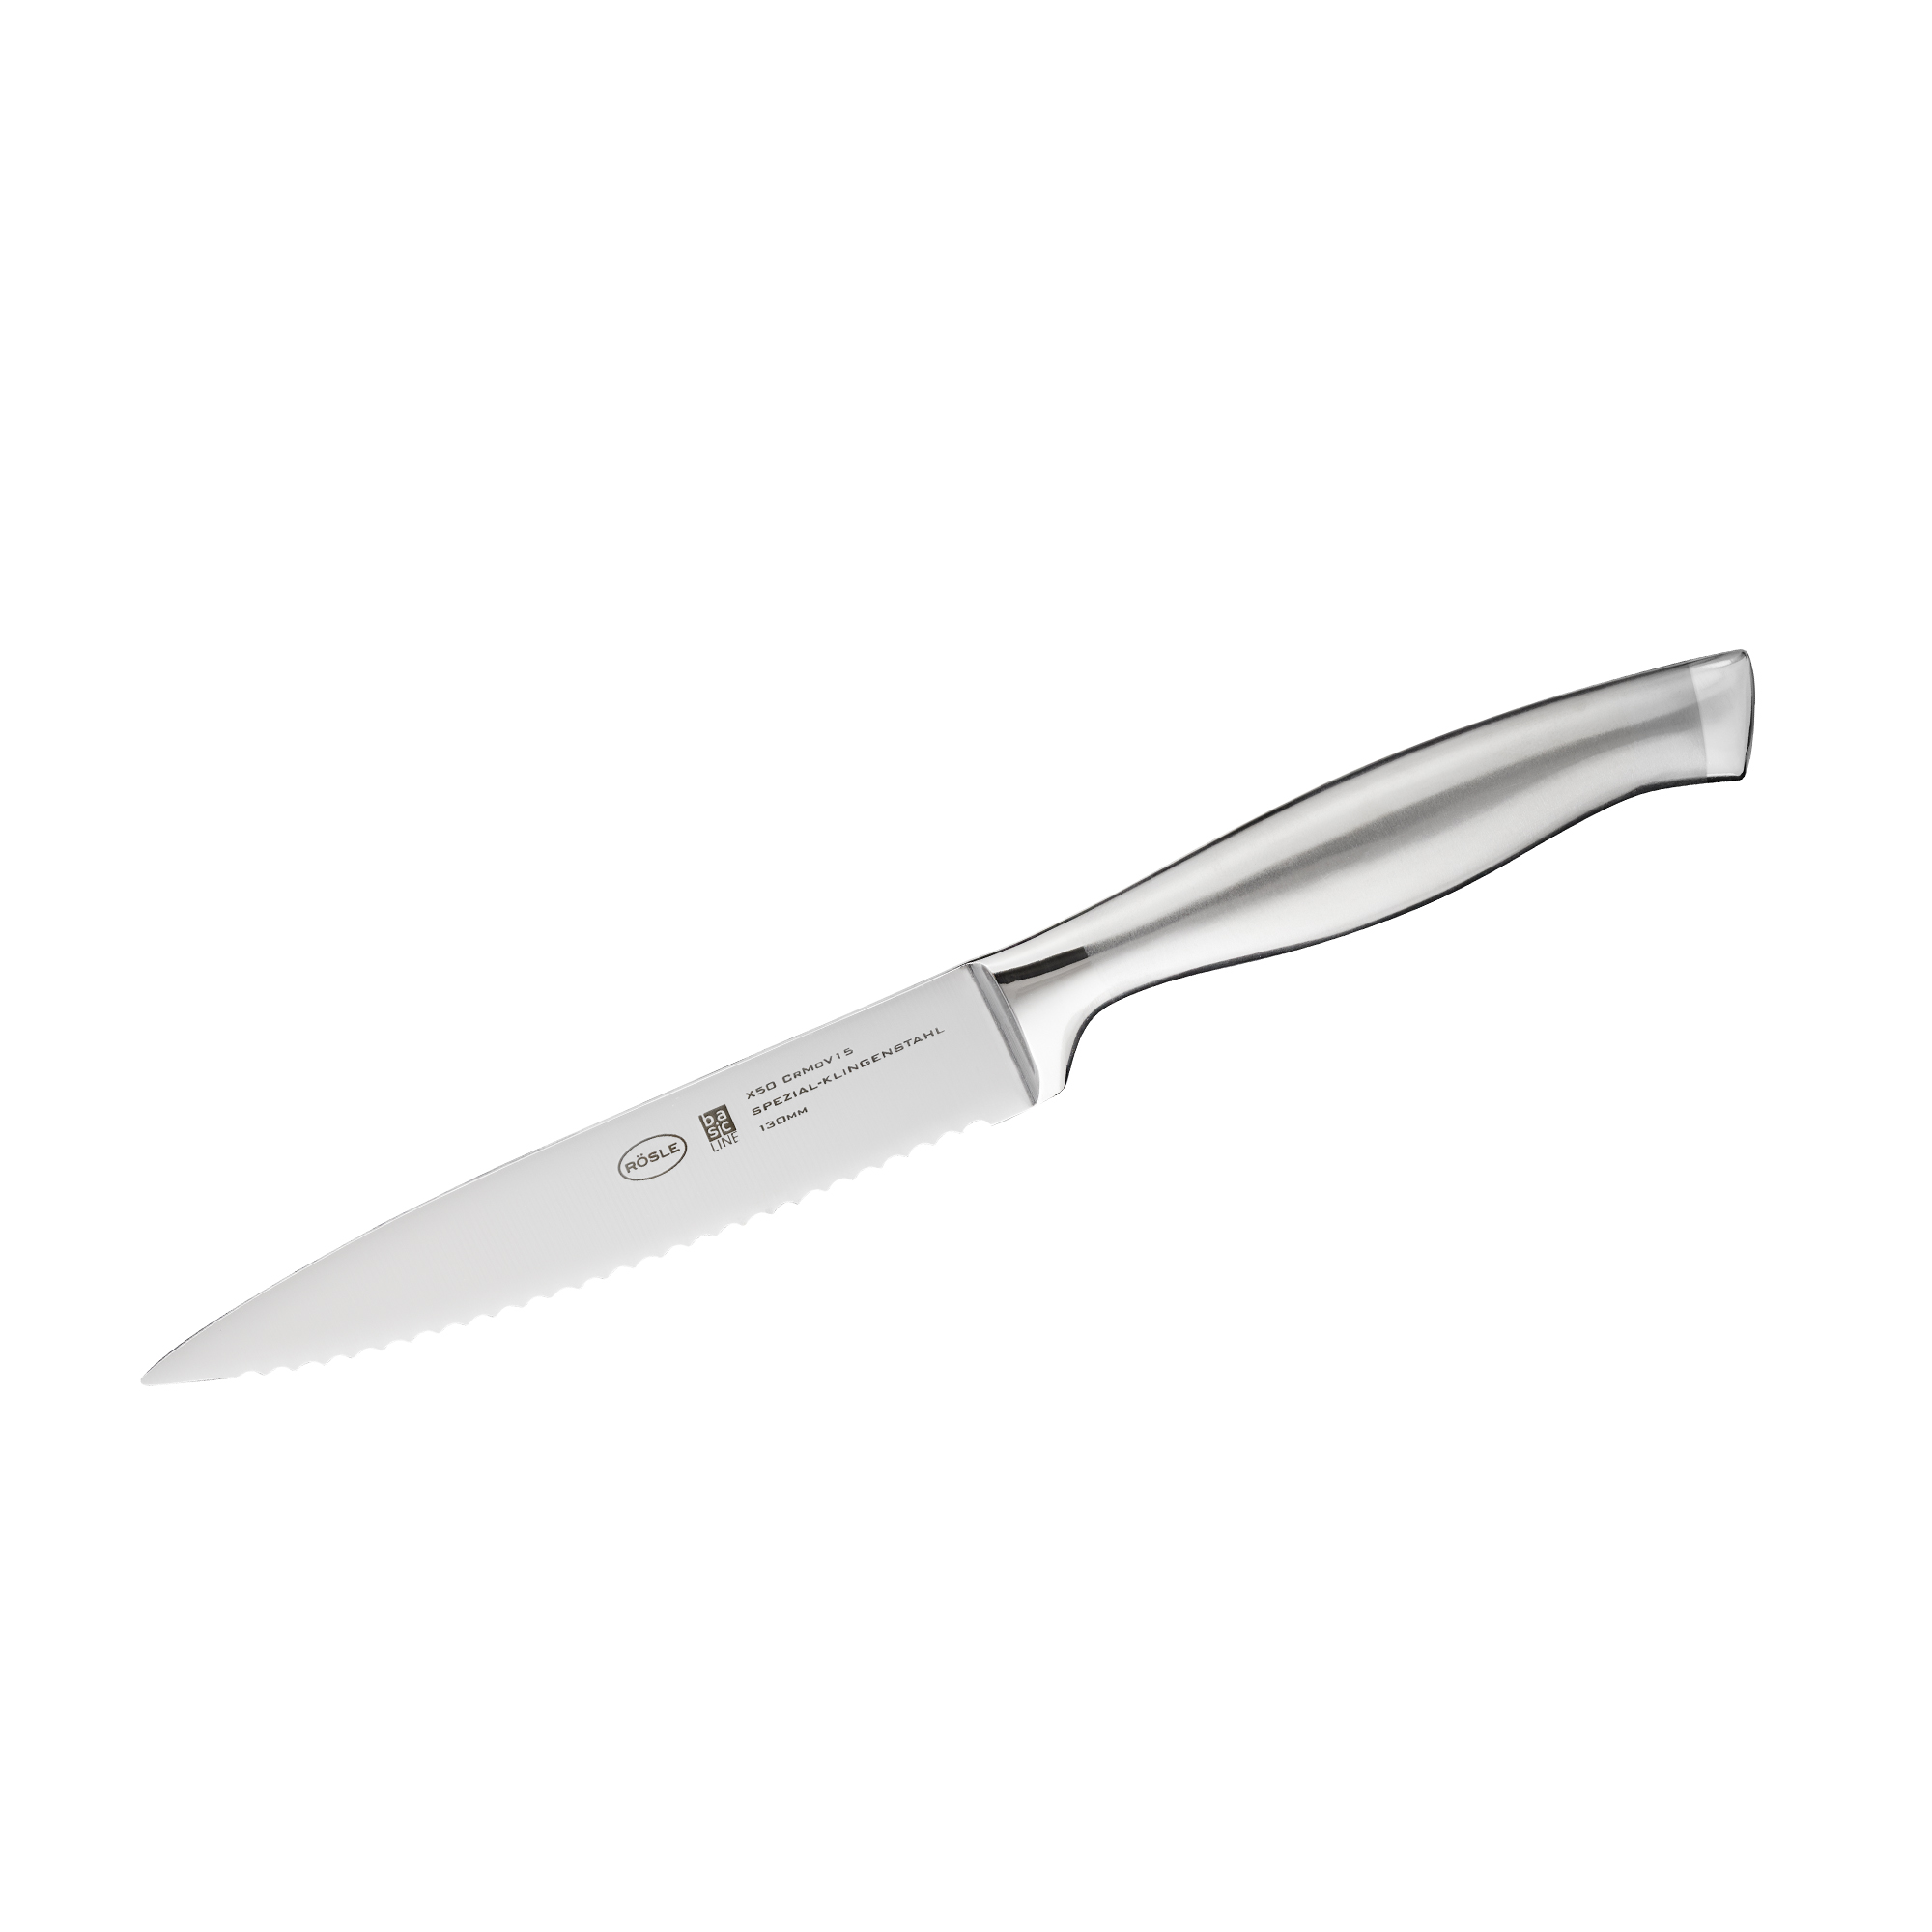 Universal knife "Basic Line" 13 cm I 5.1 in.